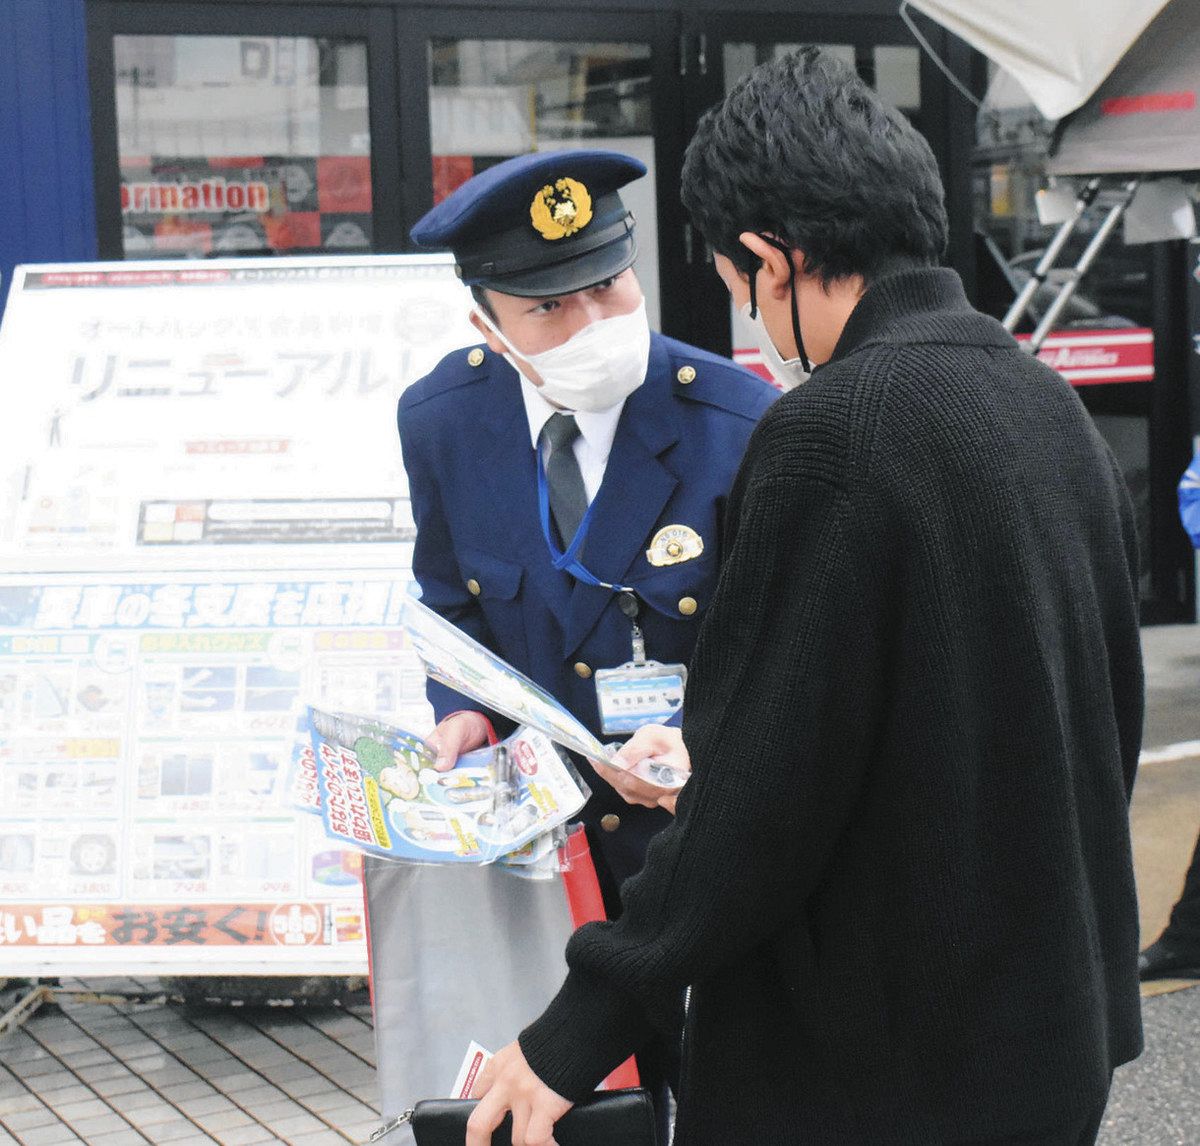 利用客にタイヤの盗難への注意を呼びかける署員（左）＝富山市婦中町塚原のスーパーオートバックス富山南で 